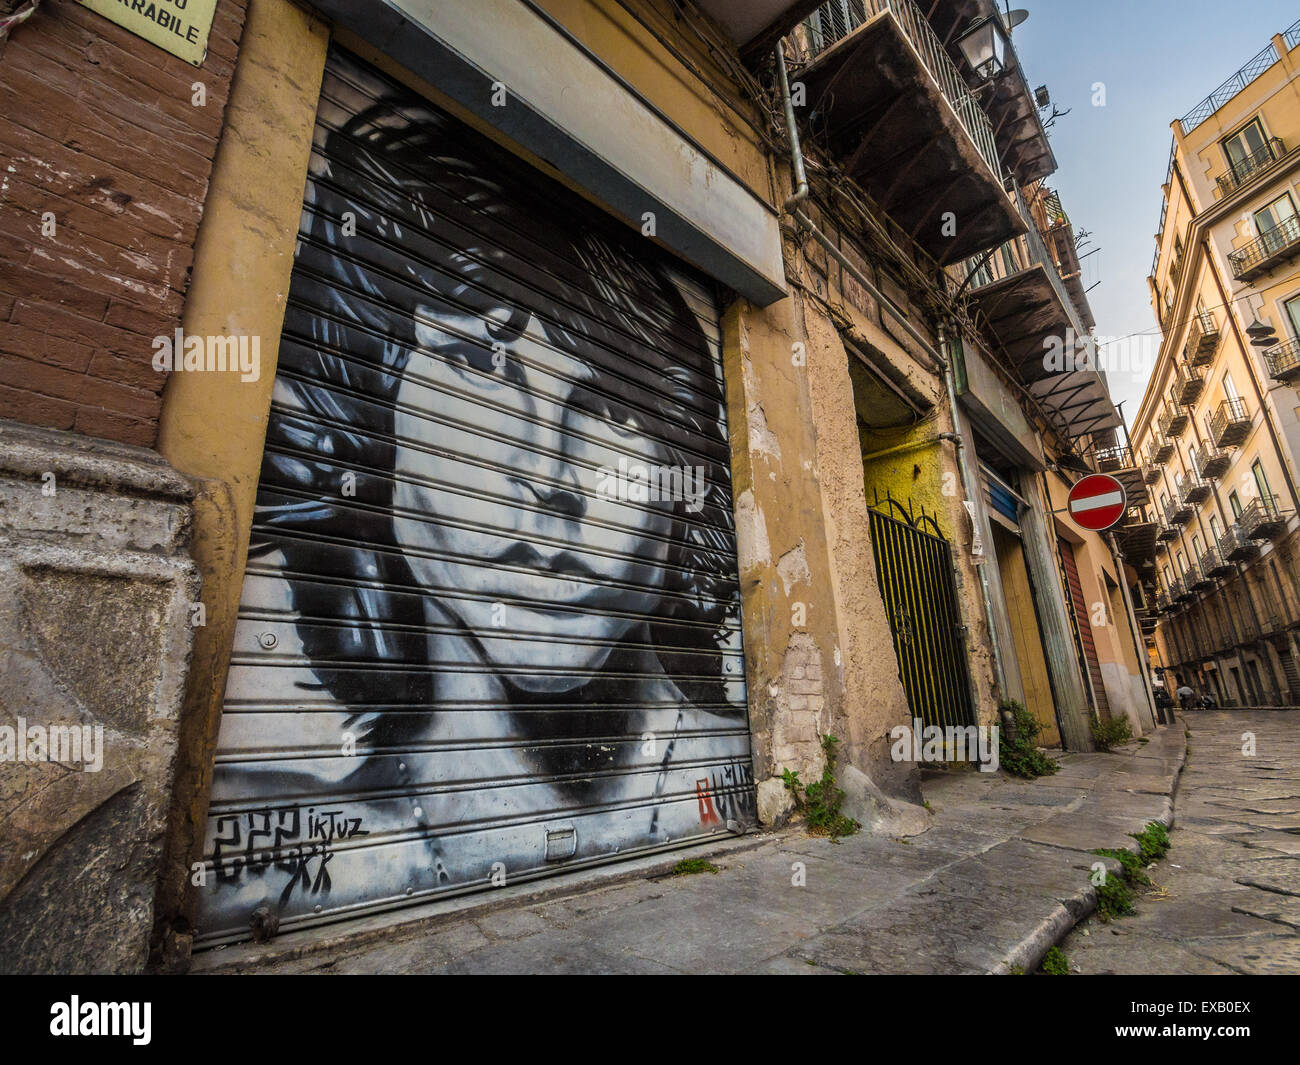 Une murale, street art graffiti ou de Jim Morrison dans les rues de Palerme, Sicile Banque D'Images